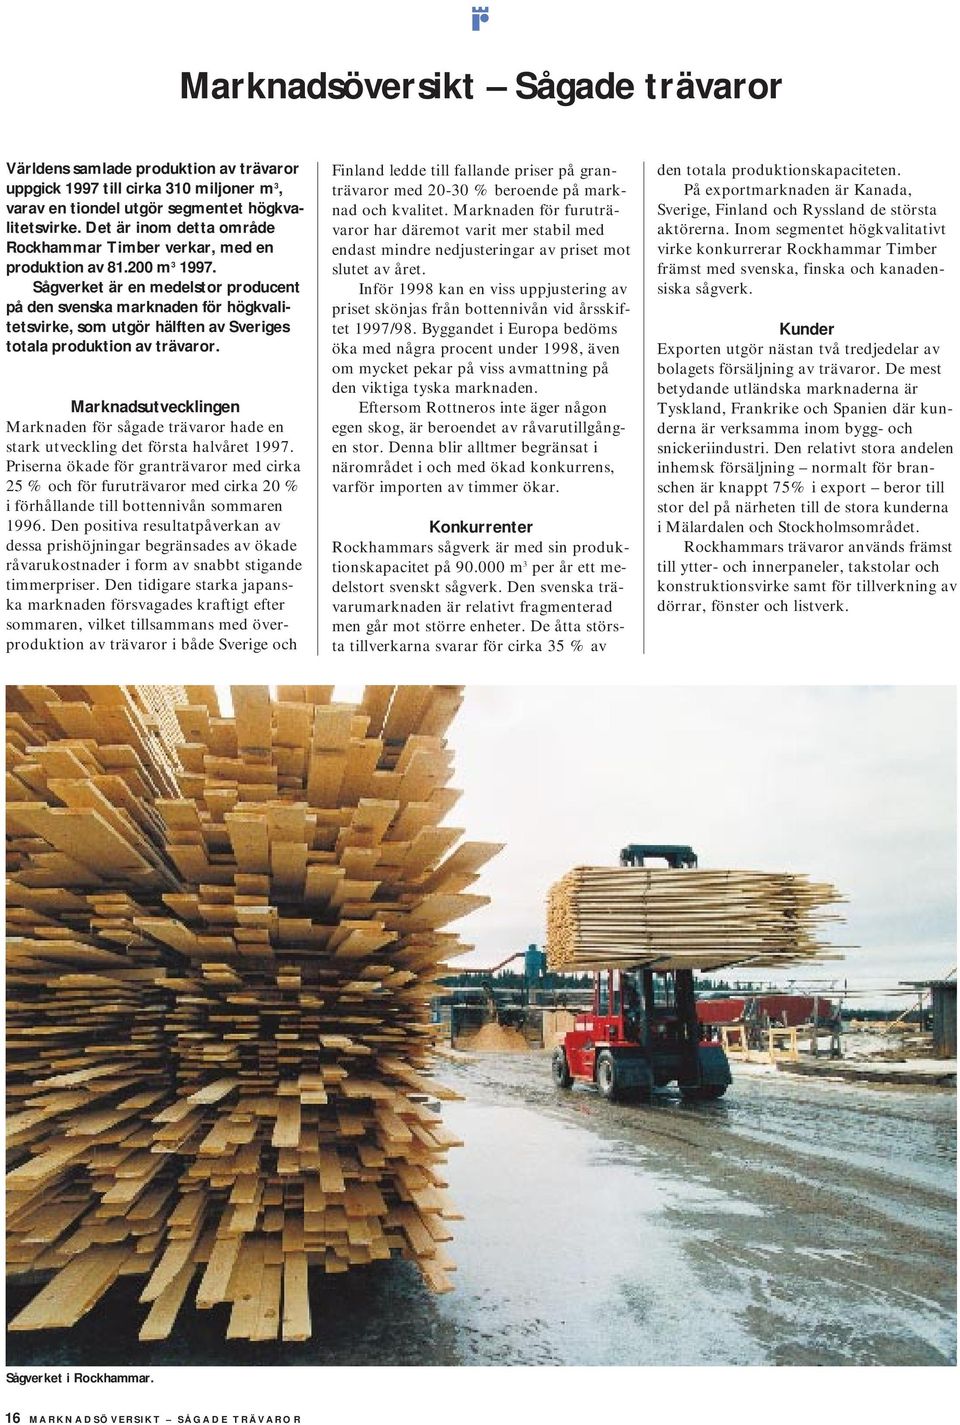 Sågverket är en medelstor producent på den svenska marknaden för högkvalitetsvirke, som utgör hälften av Sveriges totala produktion av trävaror.